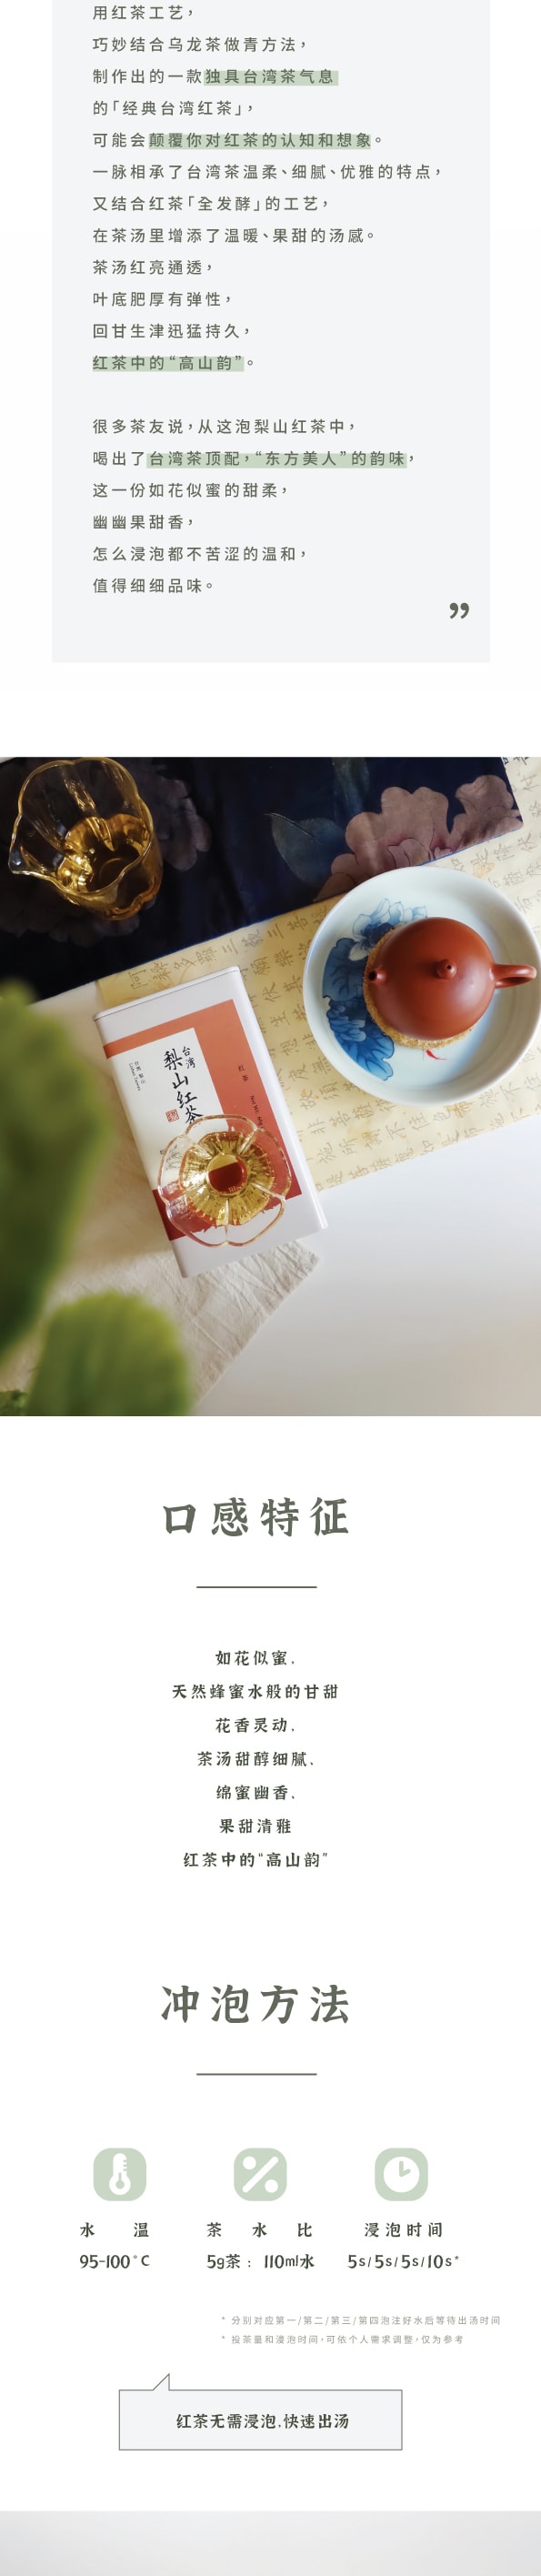 ZhaoTea 梨山红茶 台湾高等级高山红茶 花果蜜香 甘甜细腻 茶叶 红茶60g